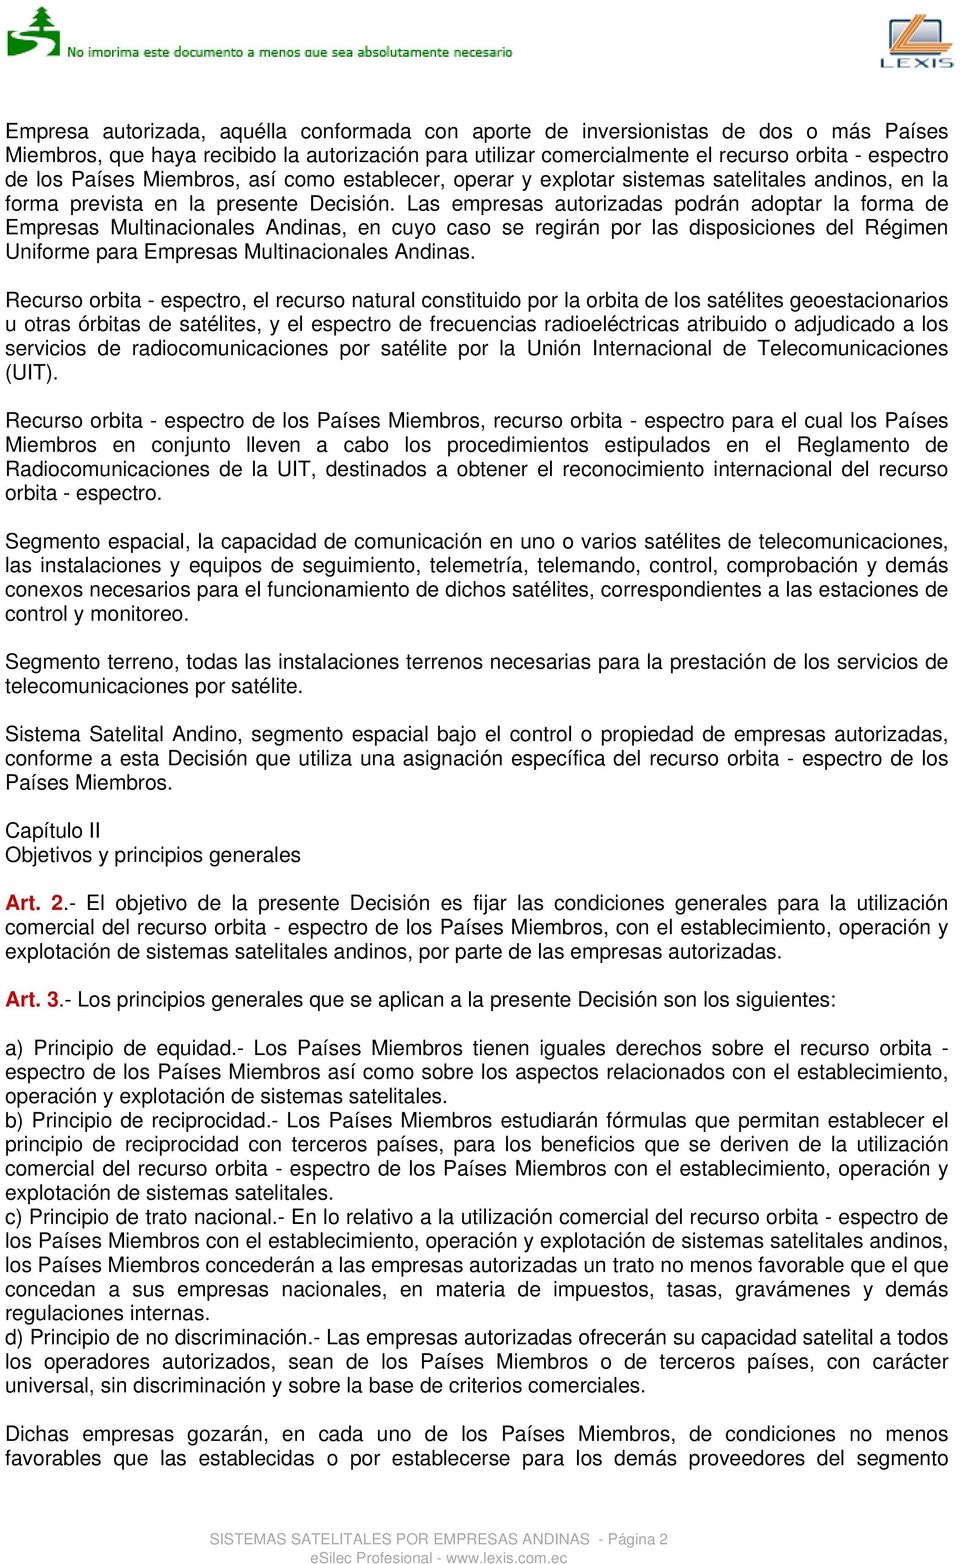 Las empresas autorizadas podrán adoptar la forma de Empresas Multinacionales Andinas, en cuyo caso se regirán por las disposiciones del Régimen Uniforme para Empresas Multinacionales Andinas.